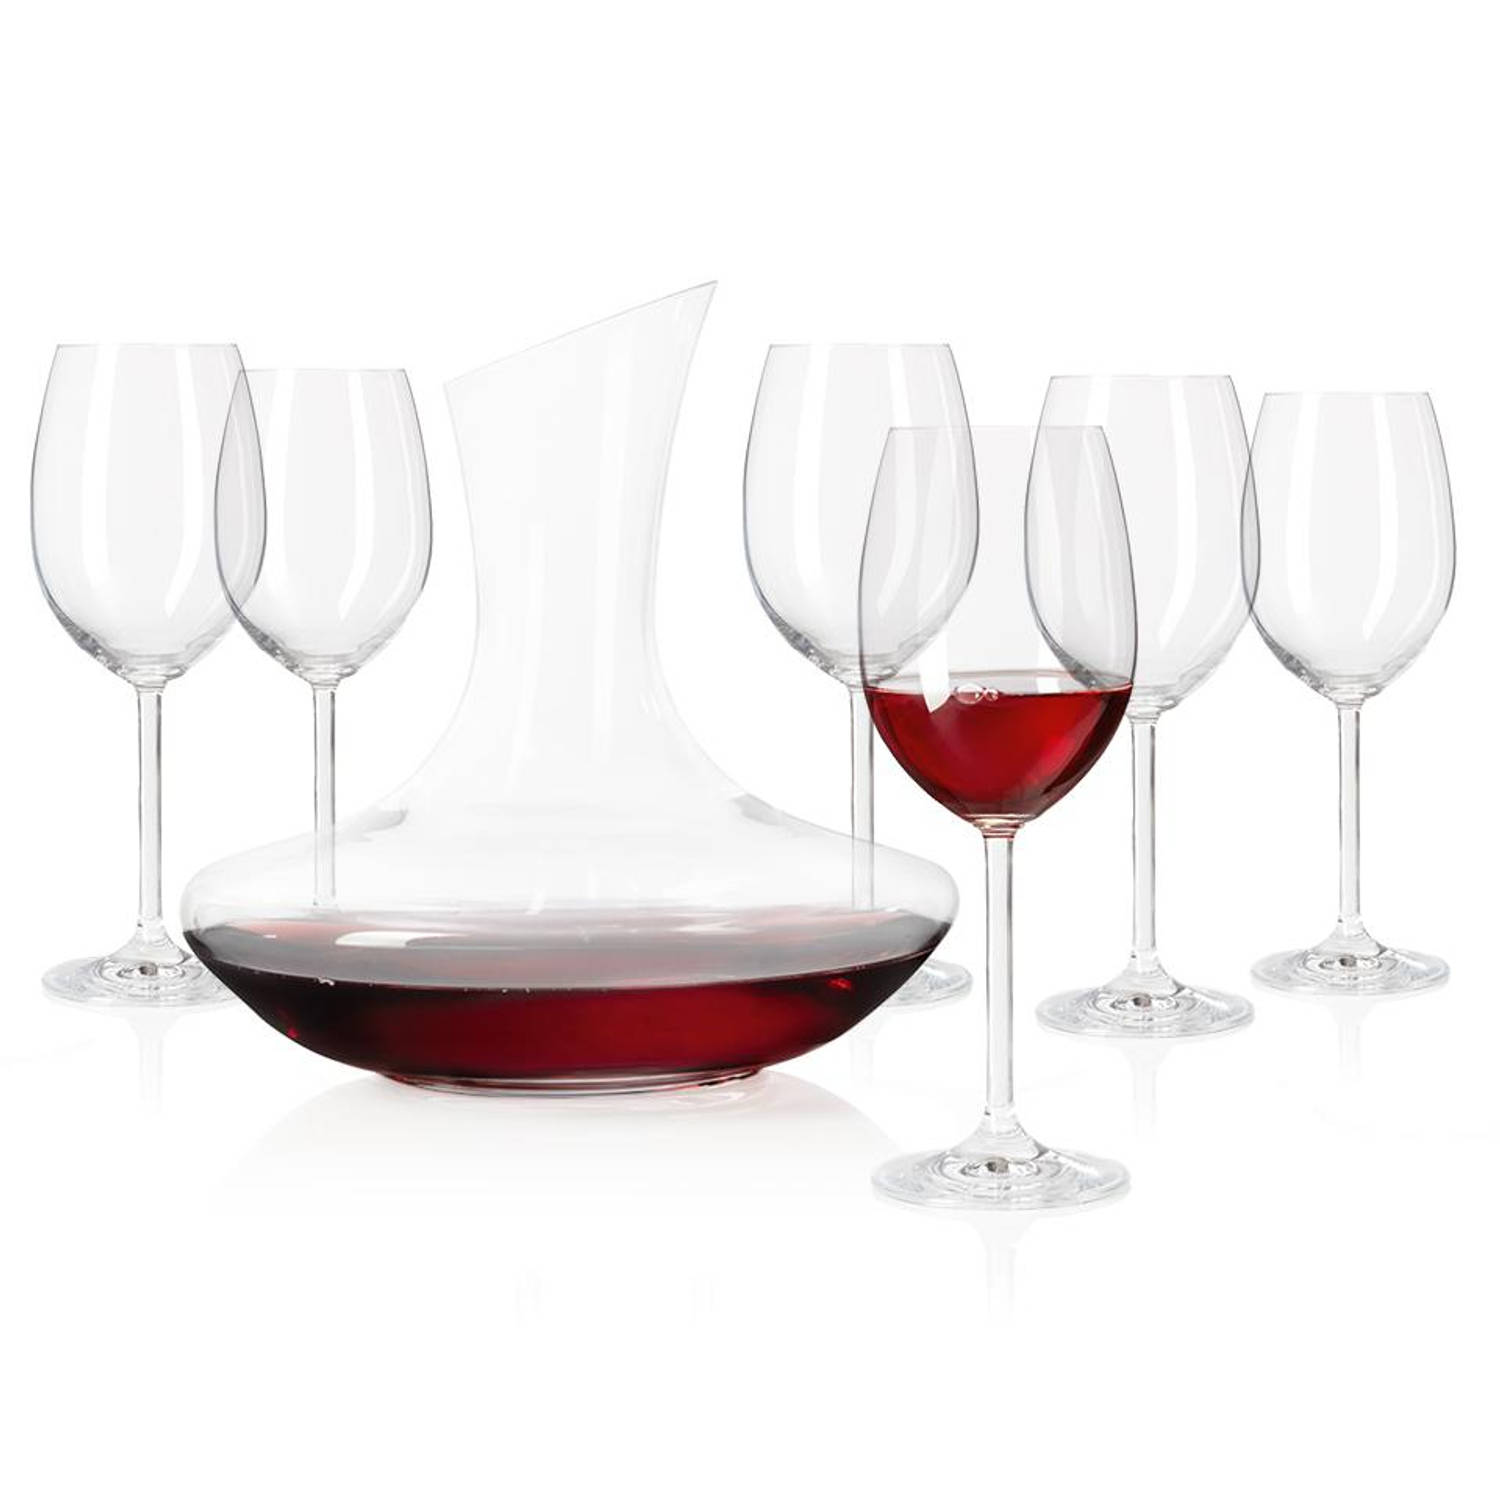 Leonardo Daily decanteerkaraf + 6 rode wijnglazen